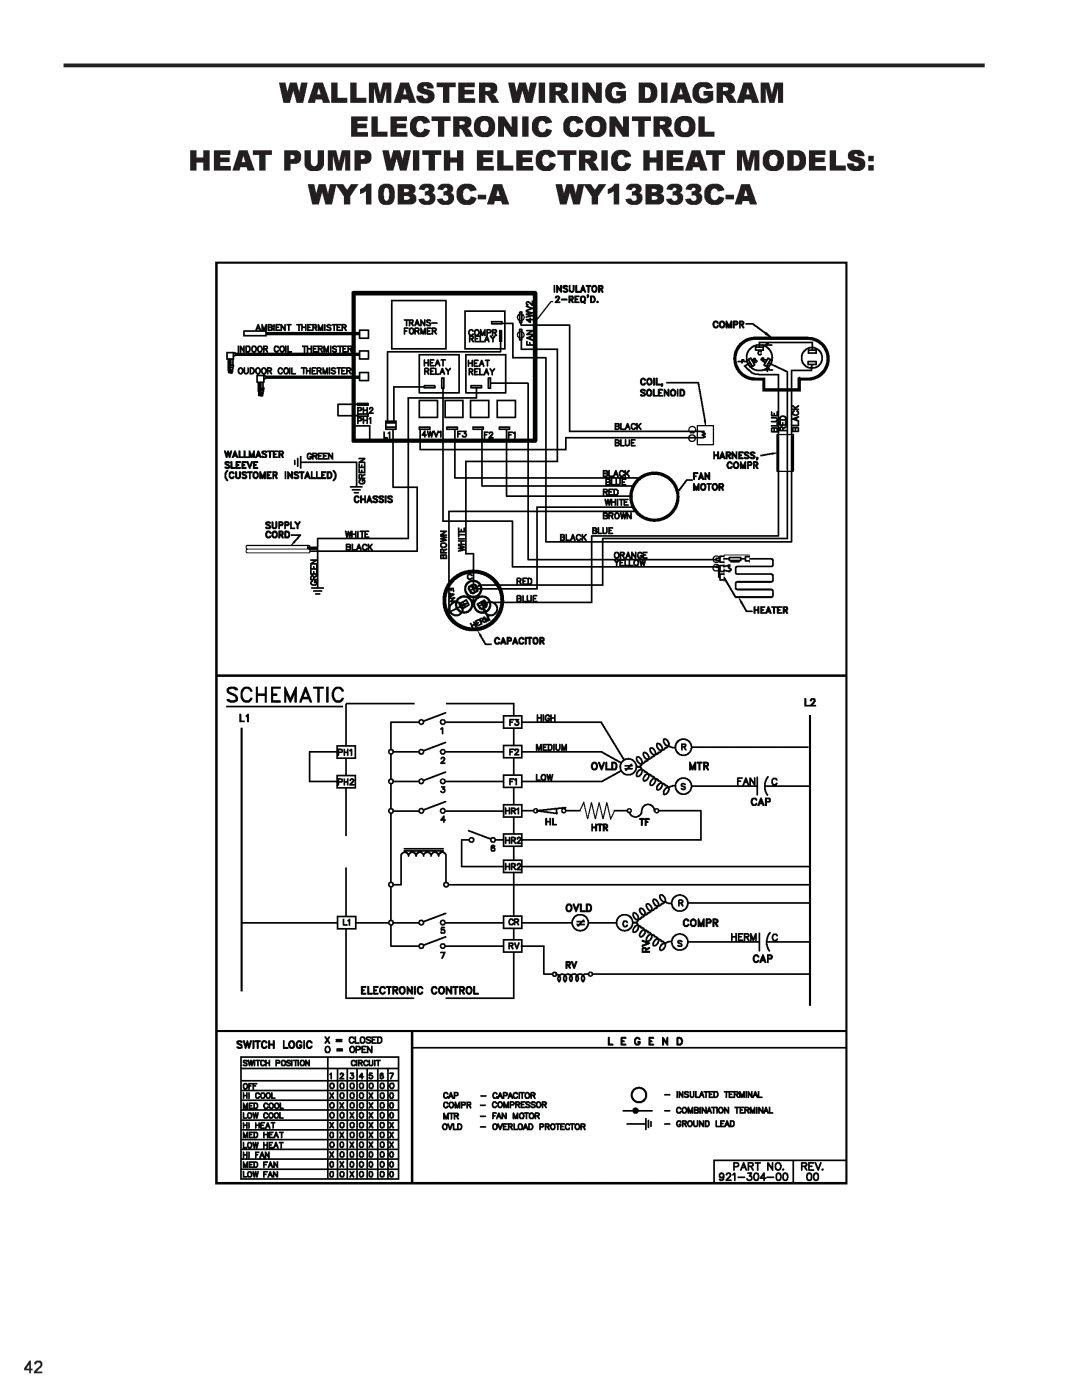 Friedrich 2008 Heat Pump With Electric Heat Models, WY10B33C-A WY13B33C-A, Wallmaster Wiring Diagram Electronic Control 